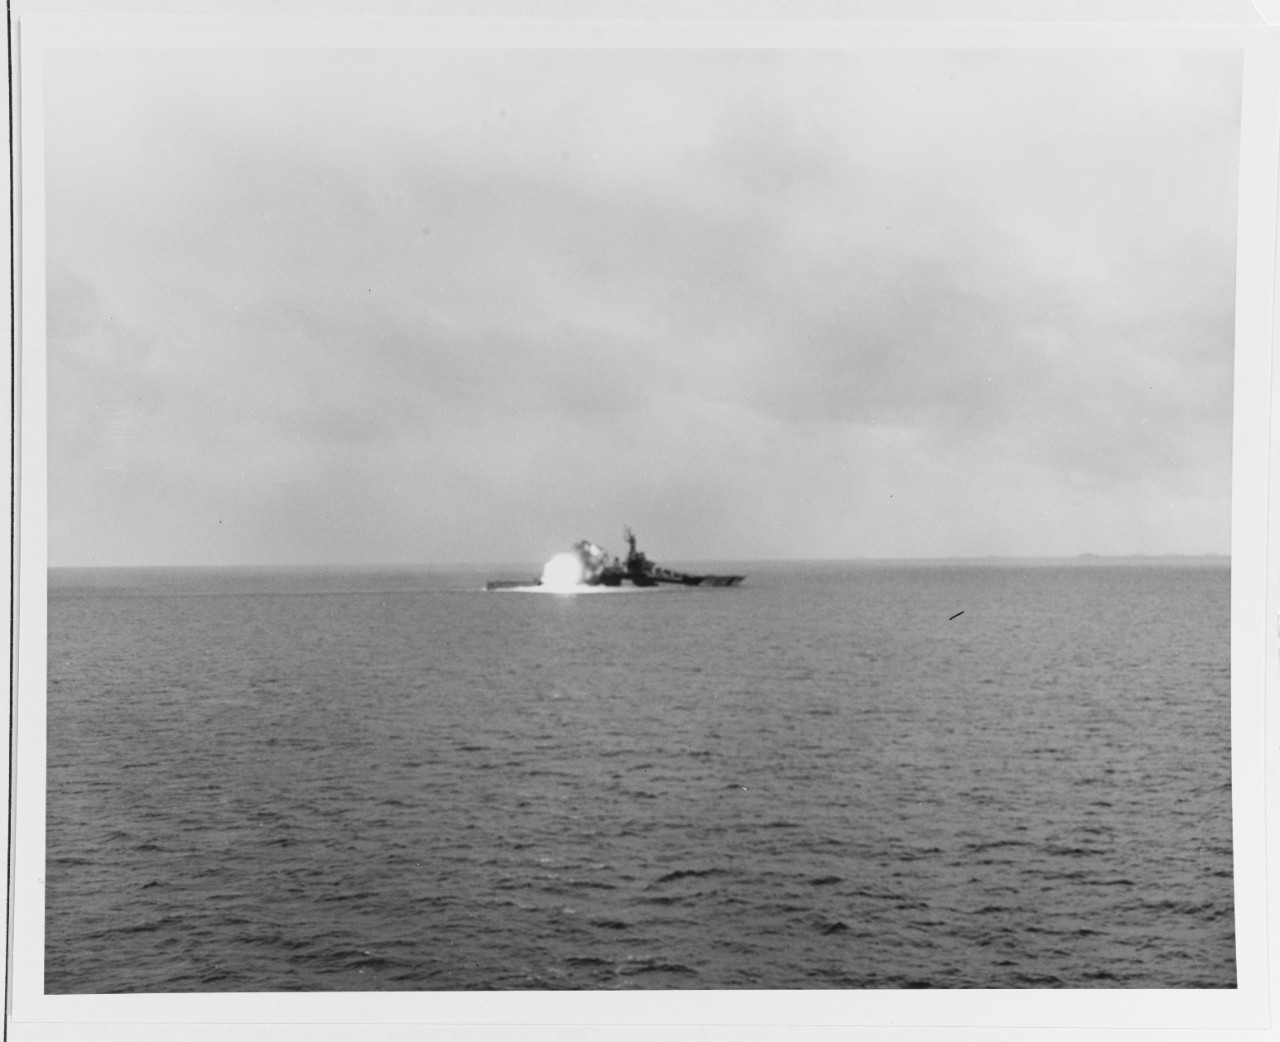 USS COLORADO (BB-45)